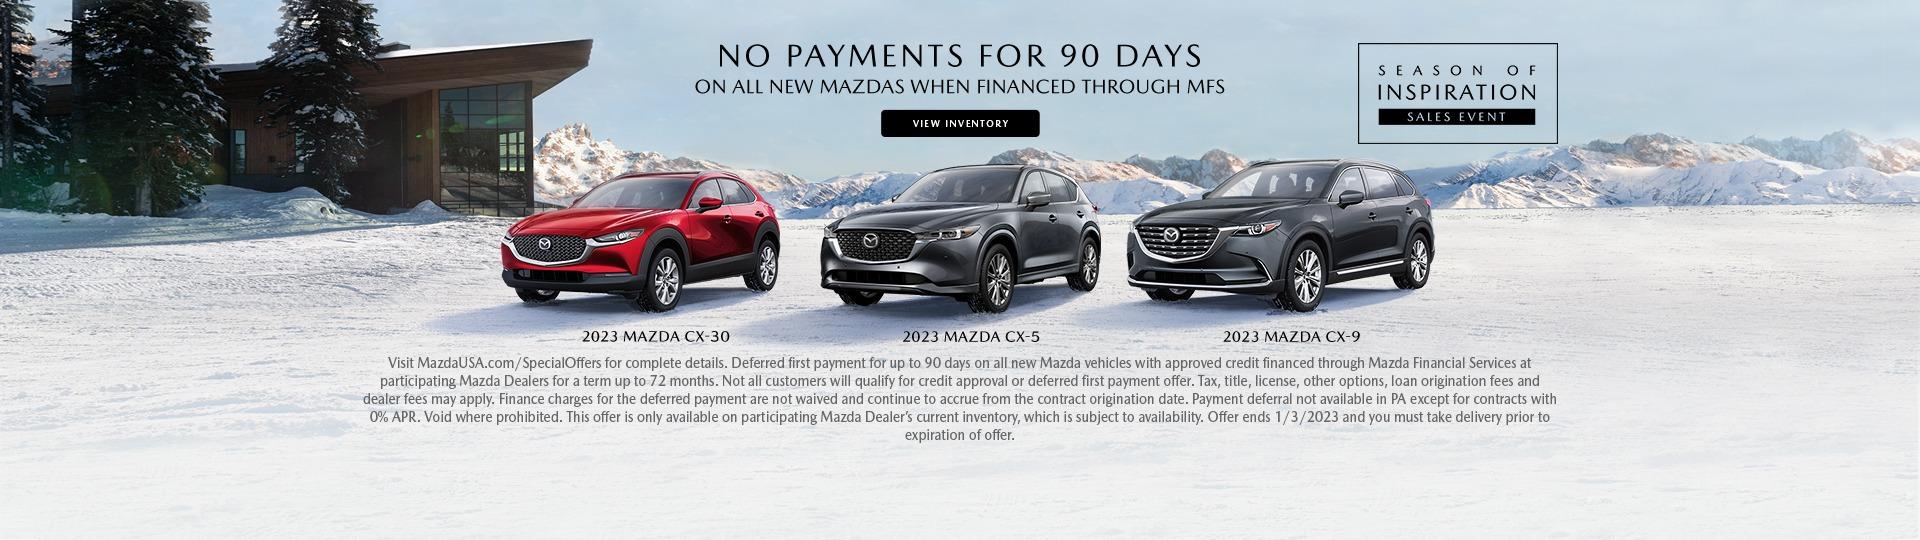 2023 Mazda Winter Event